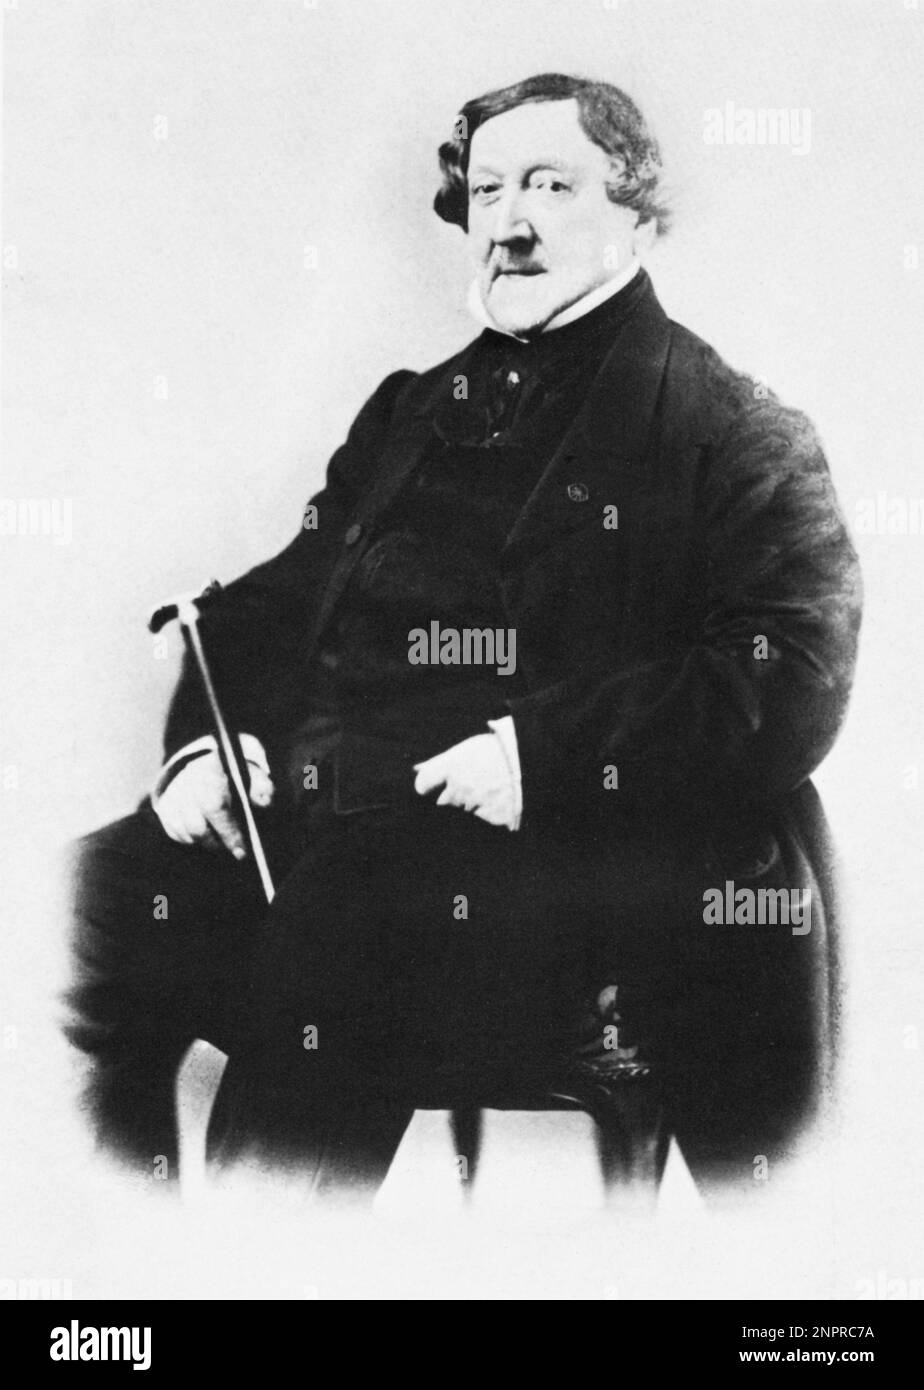 Il compositore musicale ITALIANO GIOACCHINO ROSSINI ( 1792 - 1868 ) - MUSICA CLASSICA - COMPOSITORE - OPERA LIRICA - ritratto - ritratto - colletto - colletto - cravatta - bastone da passeggio - canna ---- Archivio GBB Foto Stock